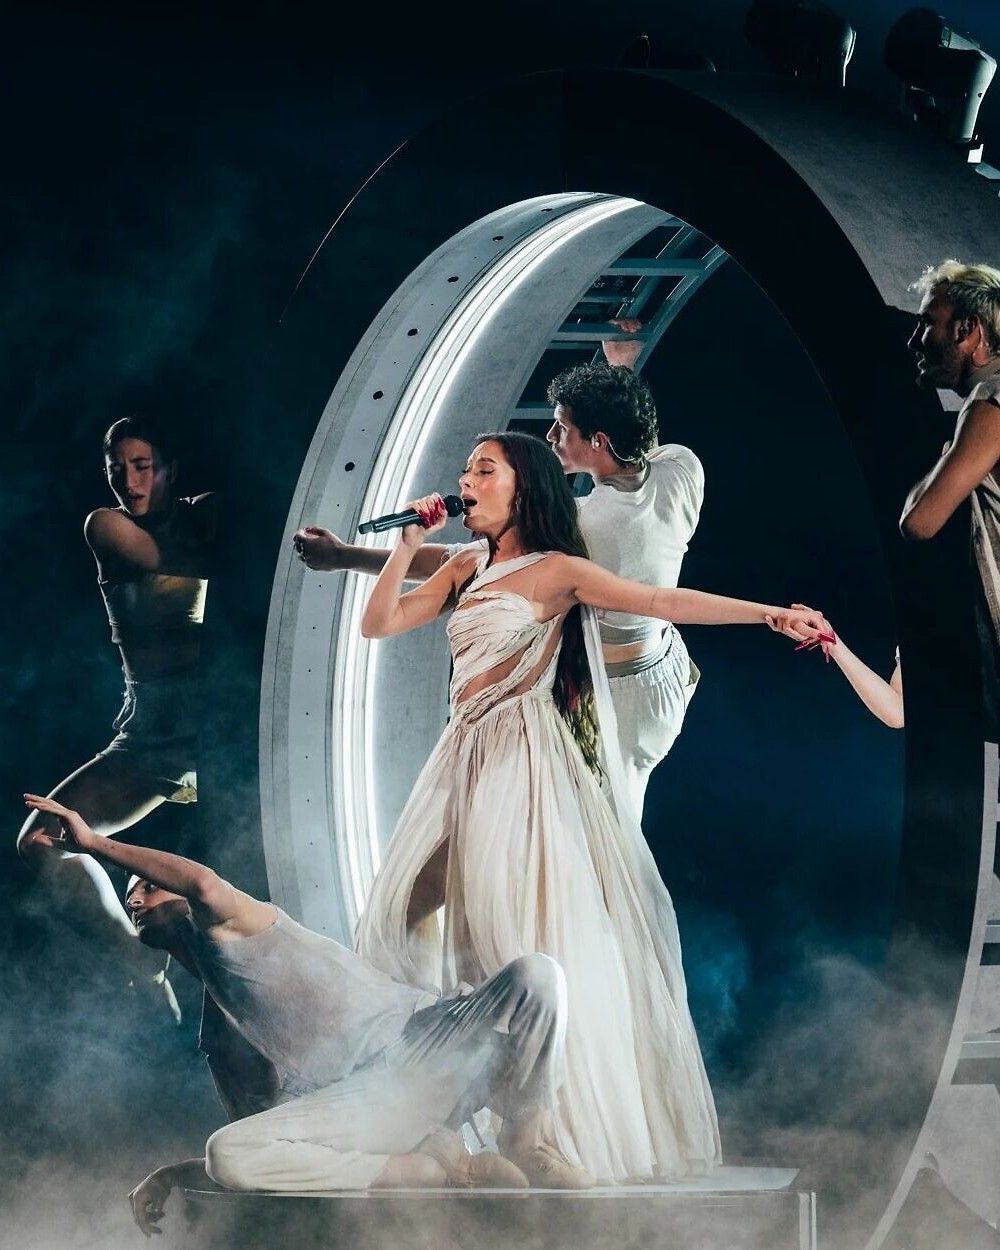 Questo è l’Eurovision più divisivo di sempre  Tra proteste e tensioni internazionali